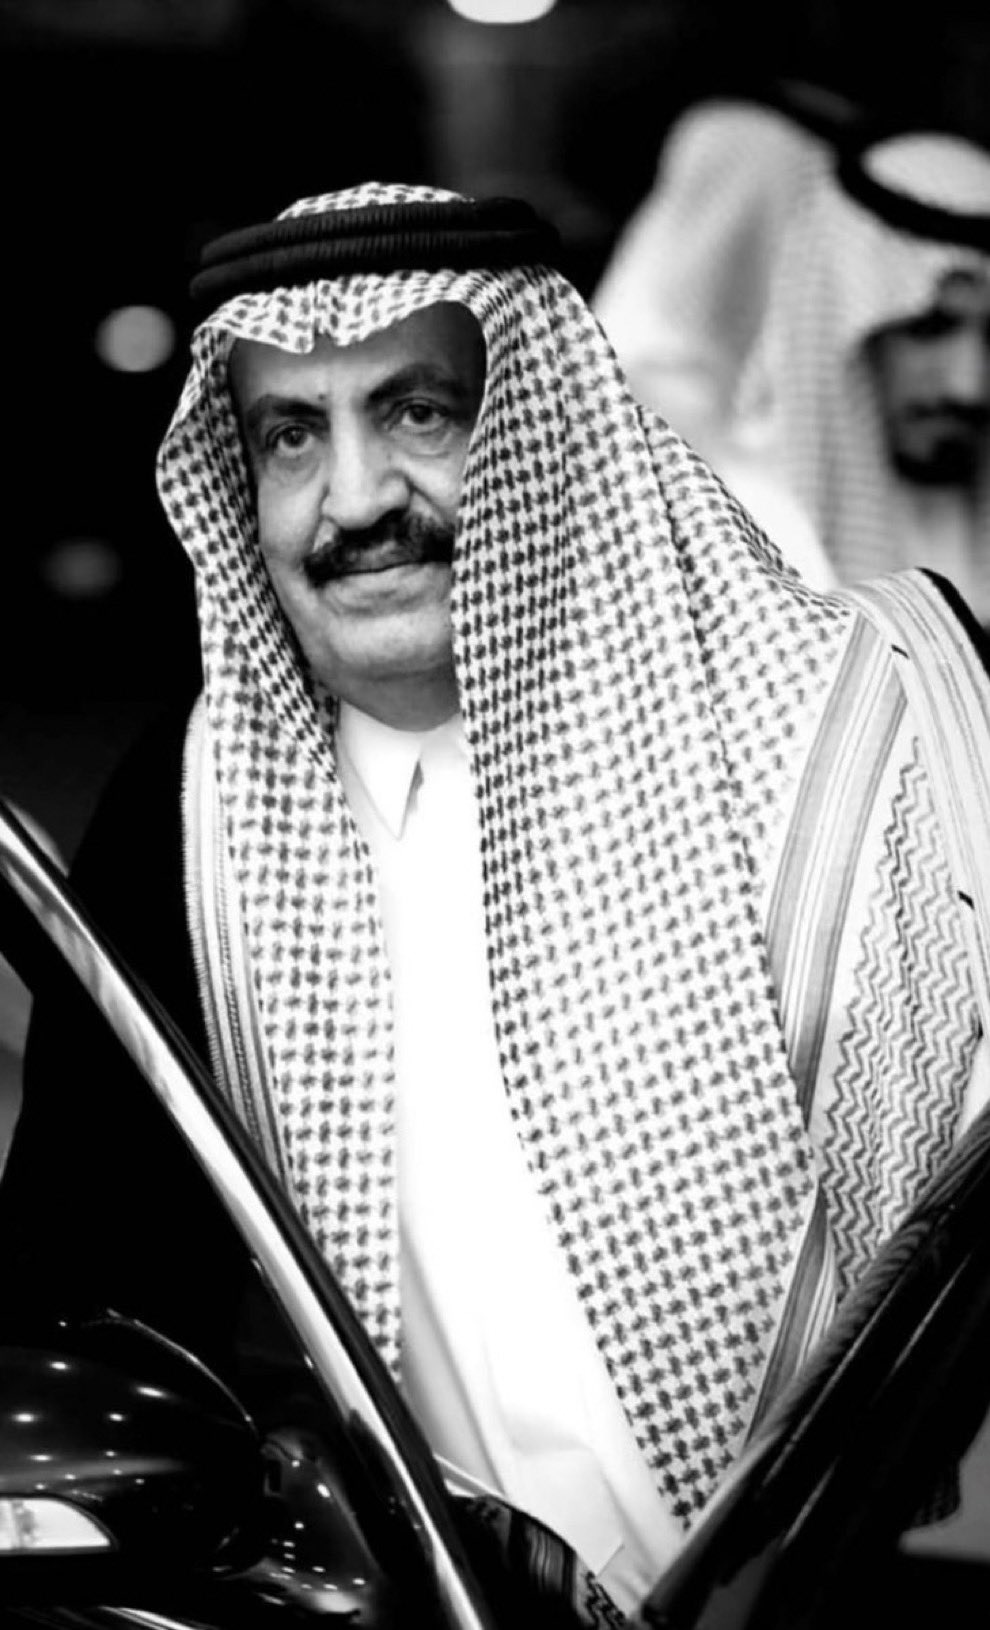 عين الأمير تركي بن محمد بن سعود الكبير آل سعود مستشارا للملك سلمان عام 2016